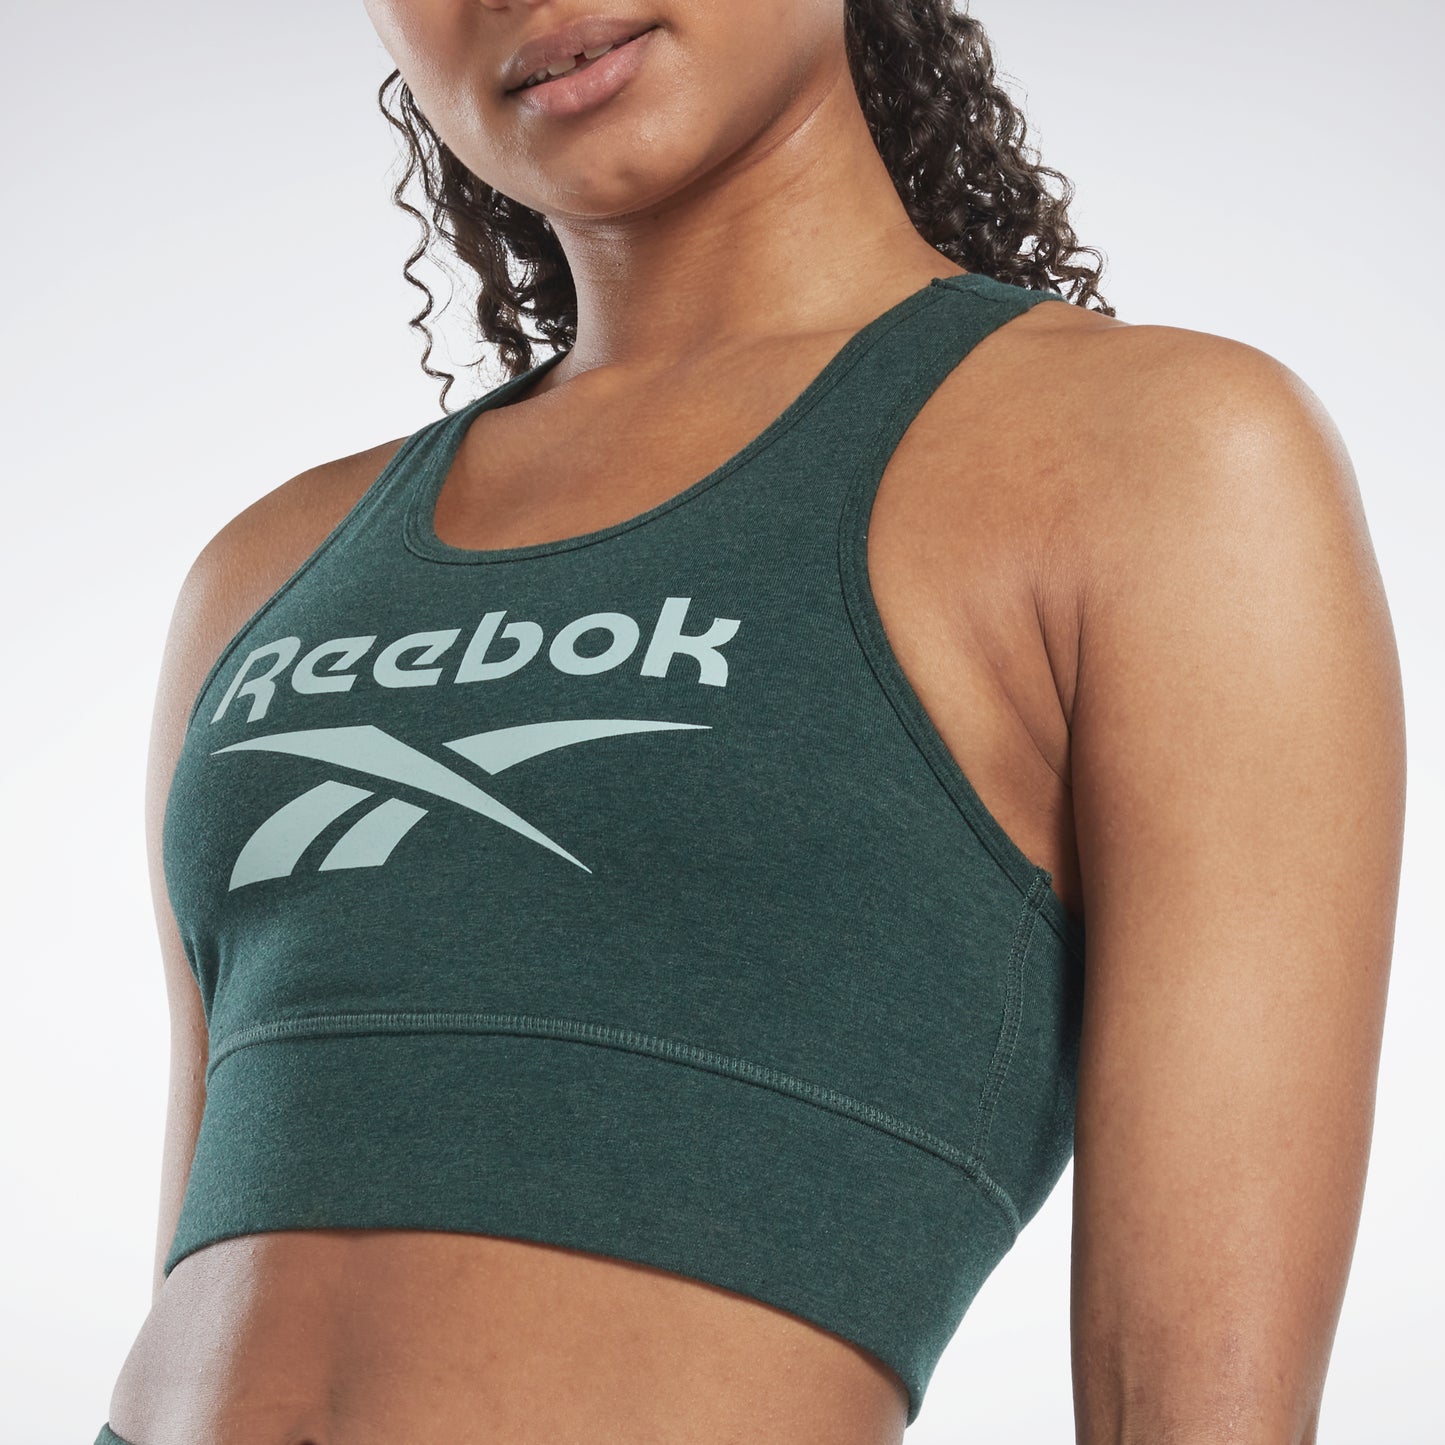 Reebok Women s clothing Sports bras